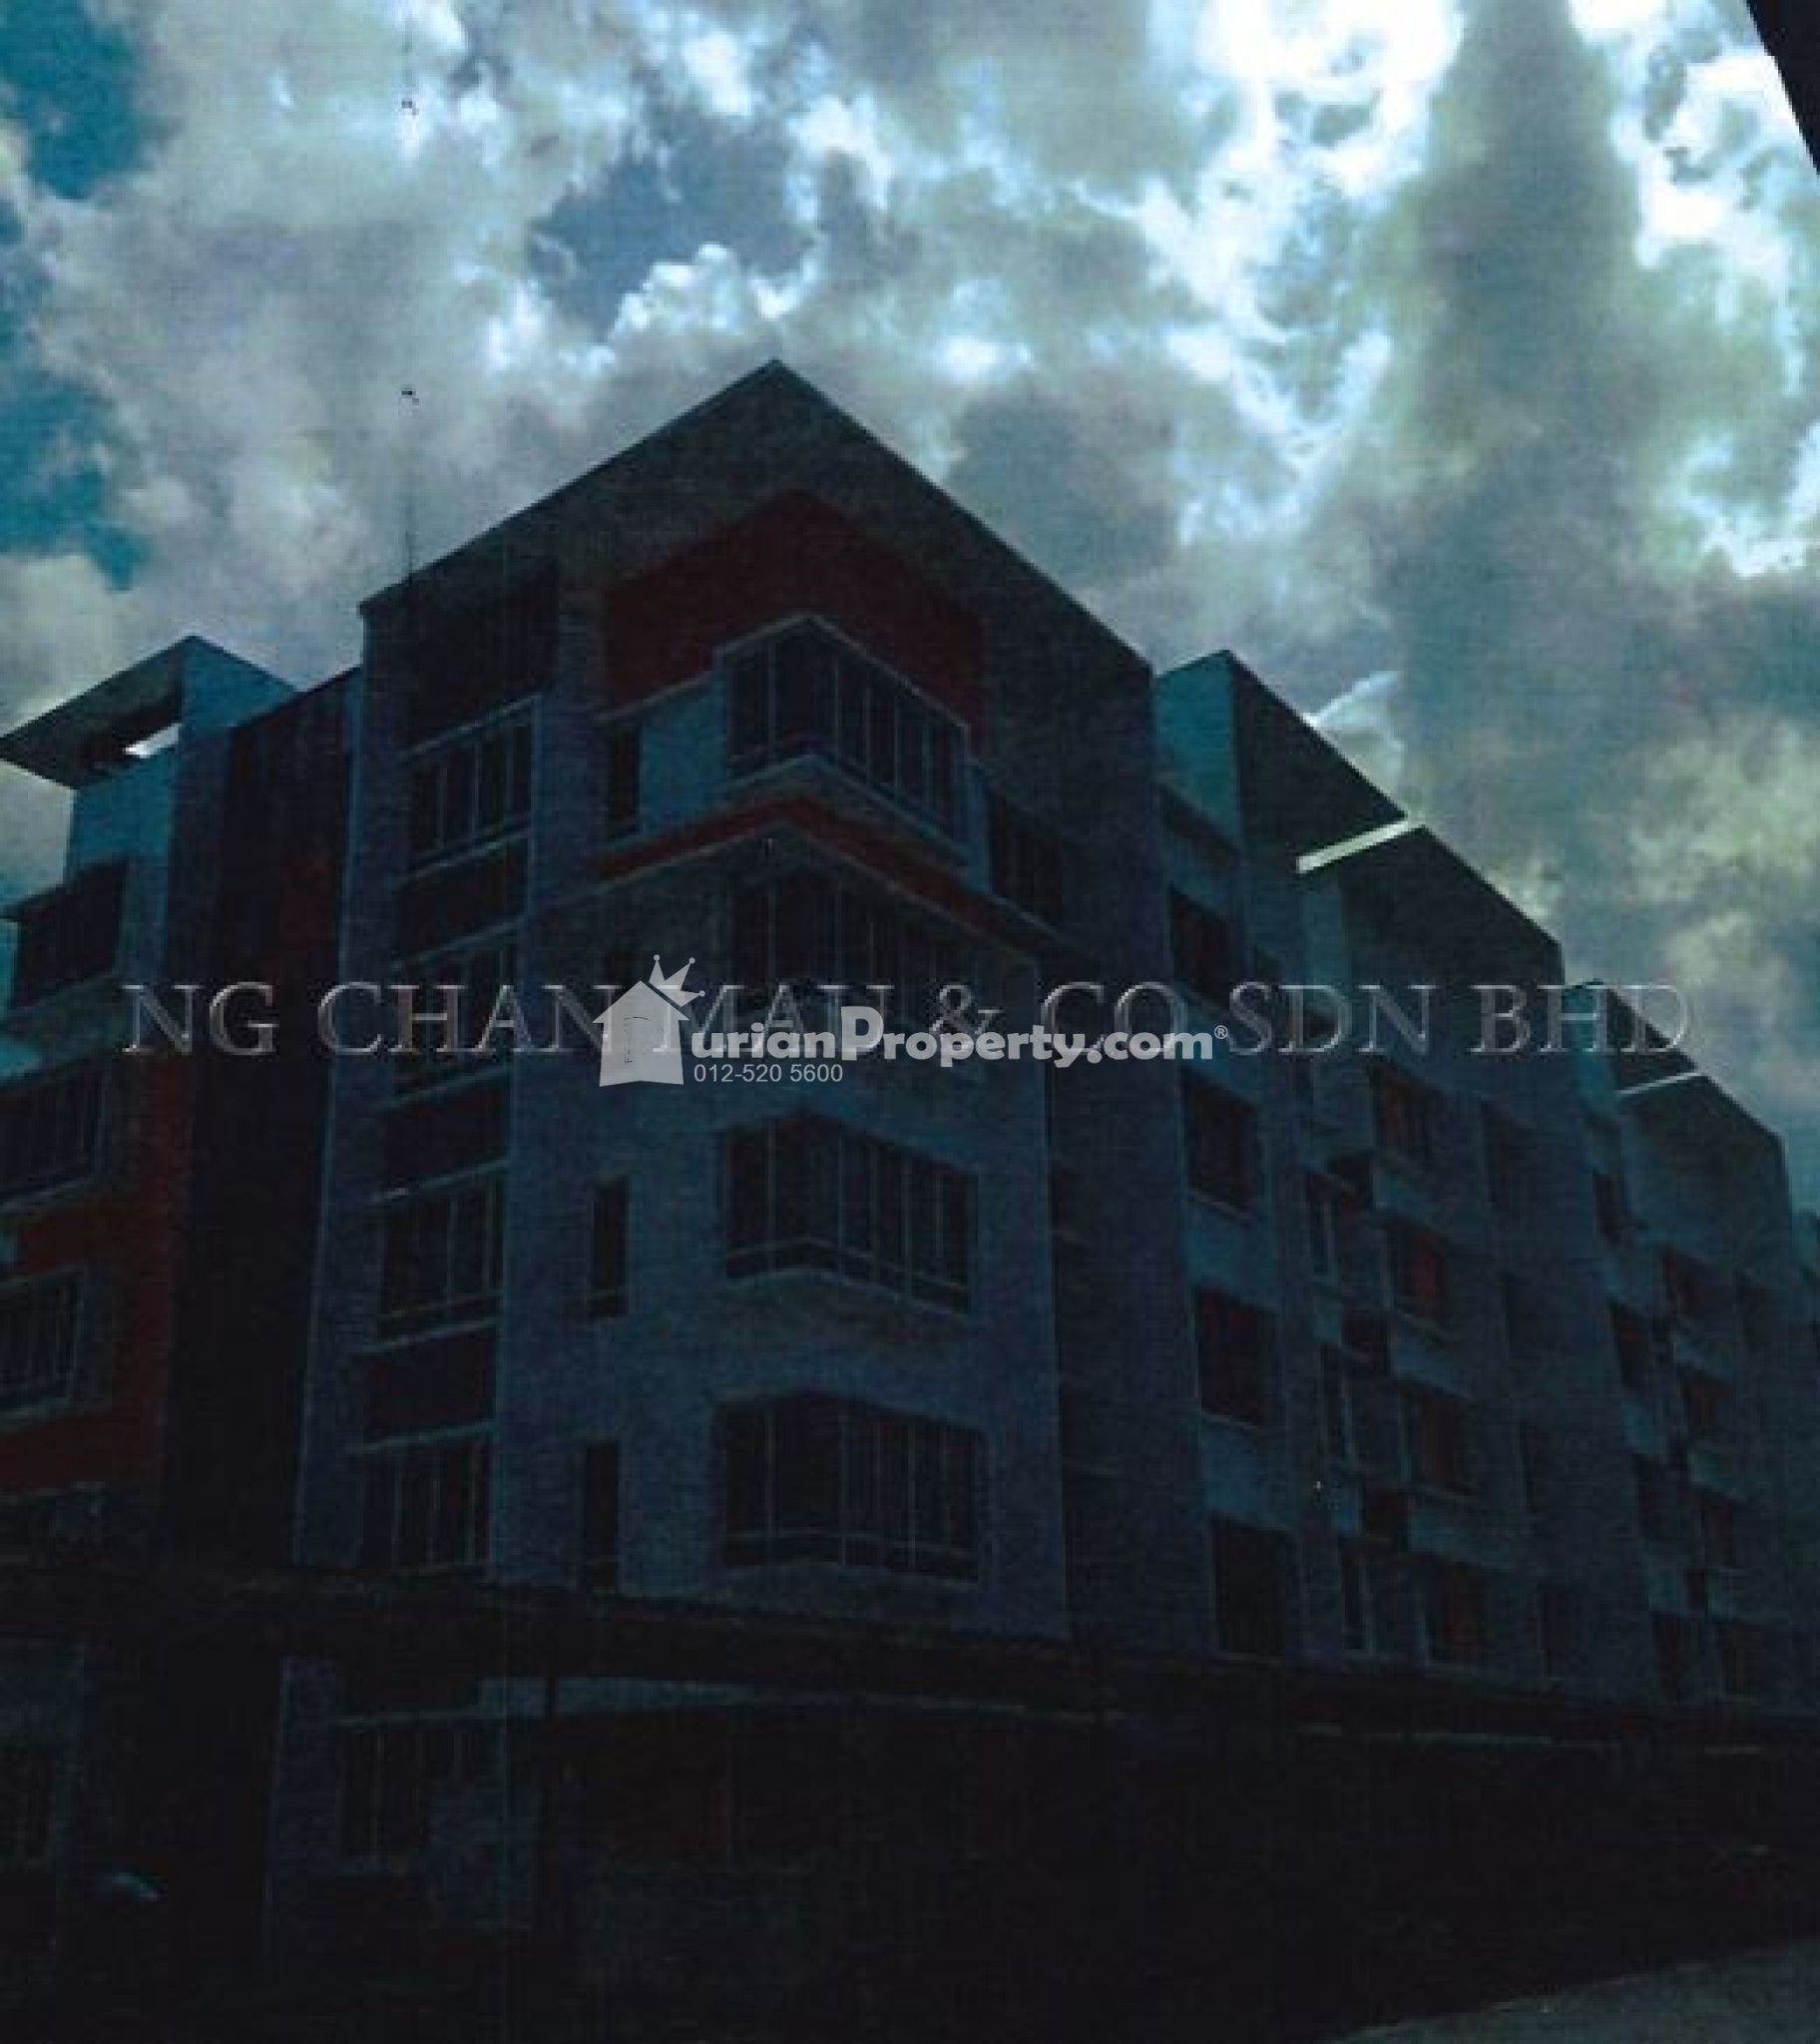 Apartment For Auction at University Utama Condominium